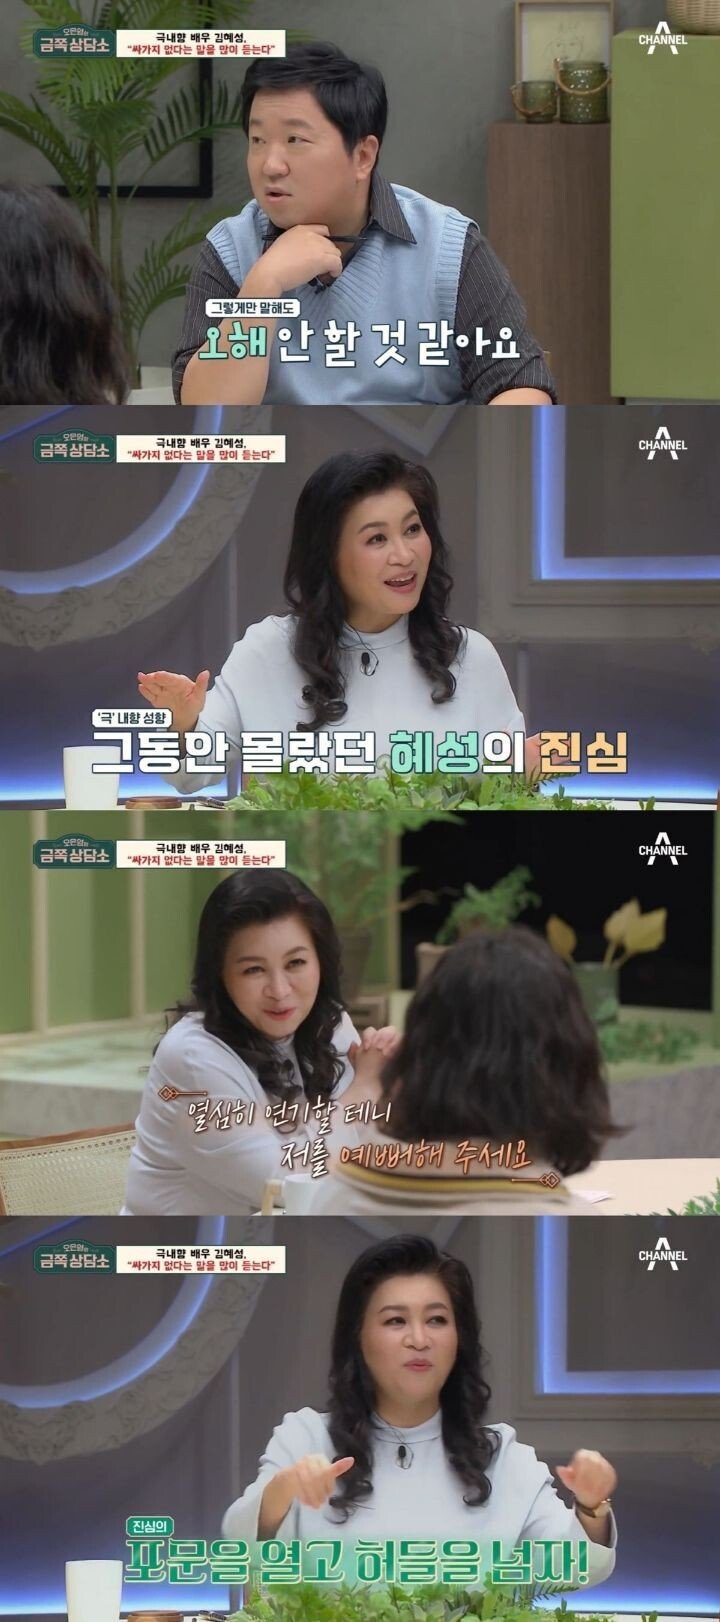 신인때 싸가지 없다는 말을 많이 들었다는 배우 김혜성